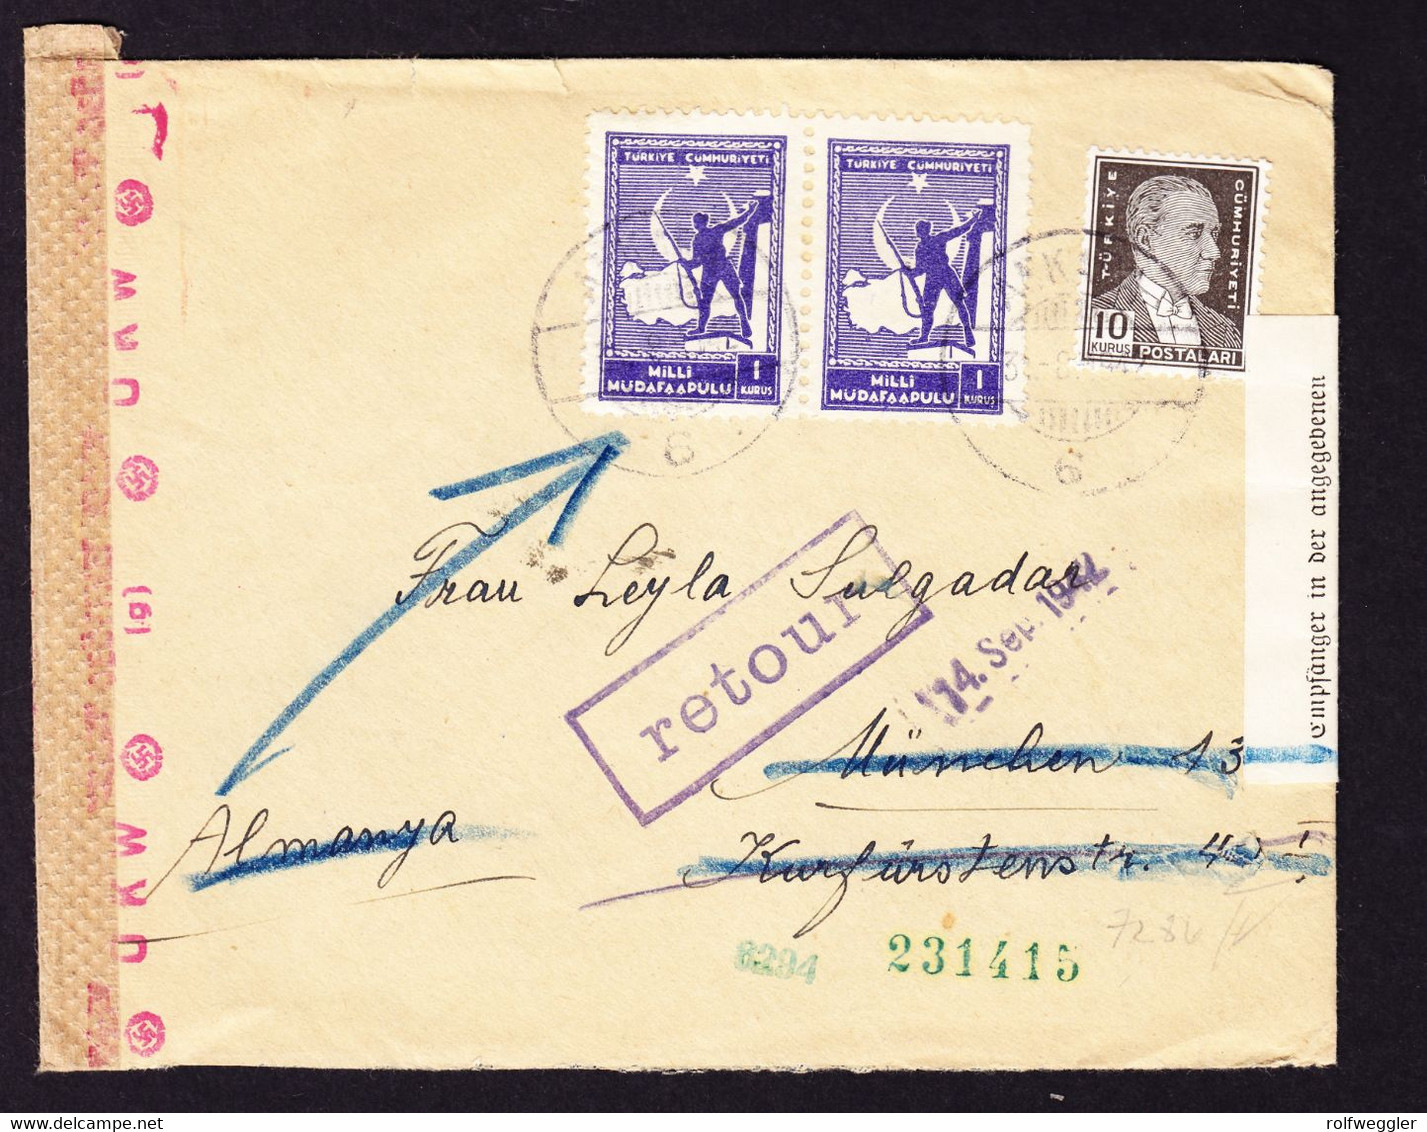 1942 Zensurierter Brief Aus Ankara Nach München. Leitzettel: Strasse In München Unbekannt, Retour. - Covers & Documents